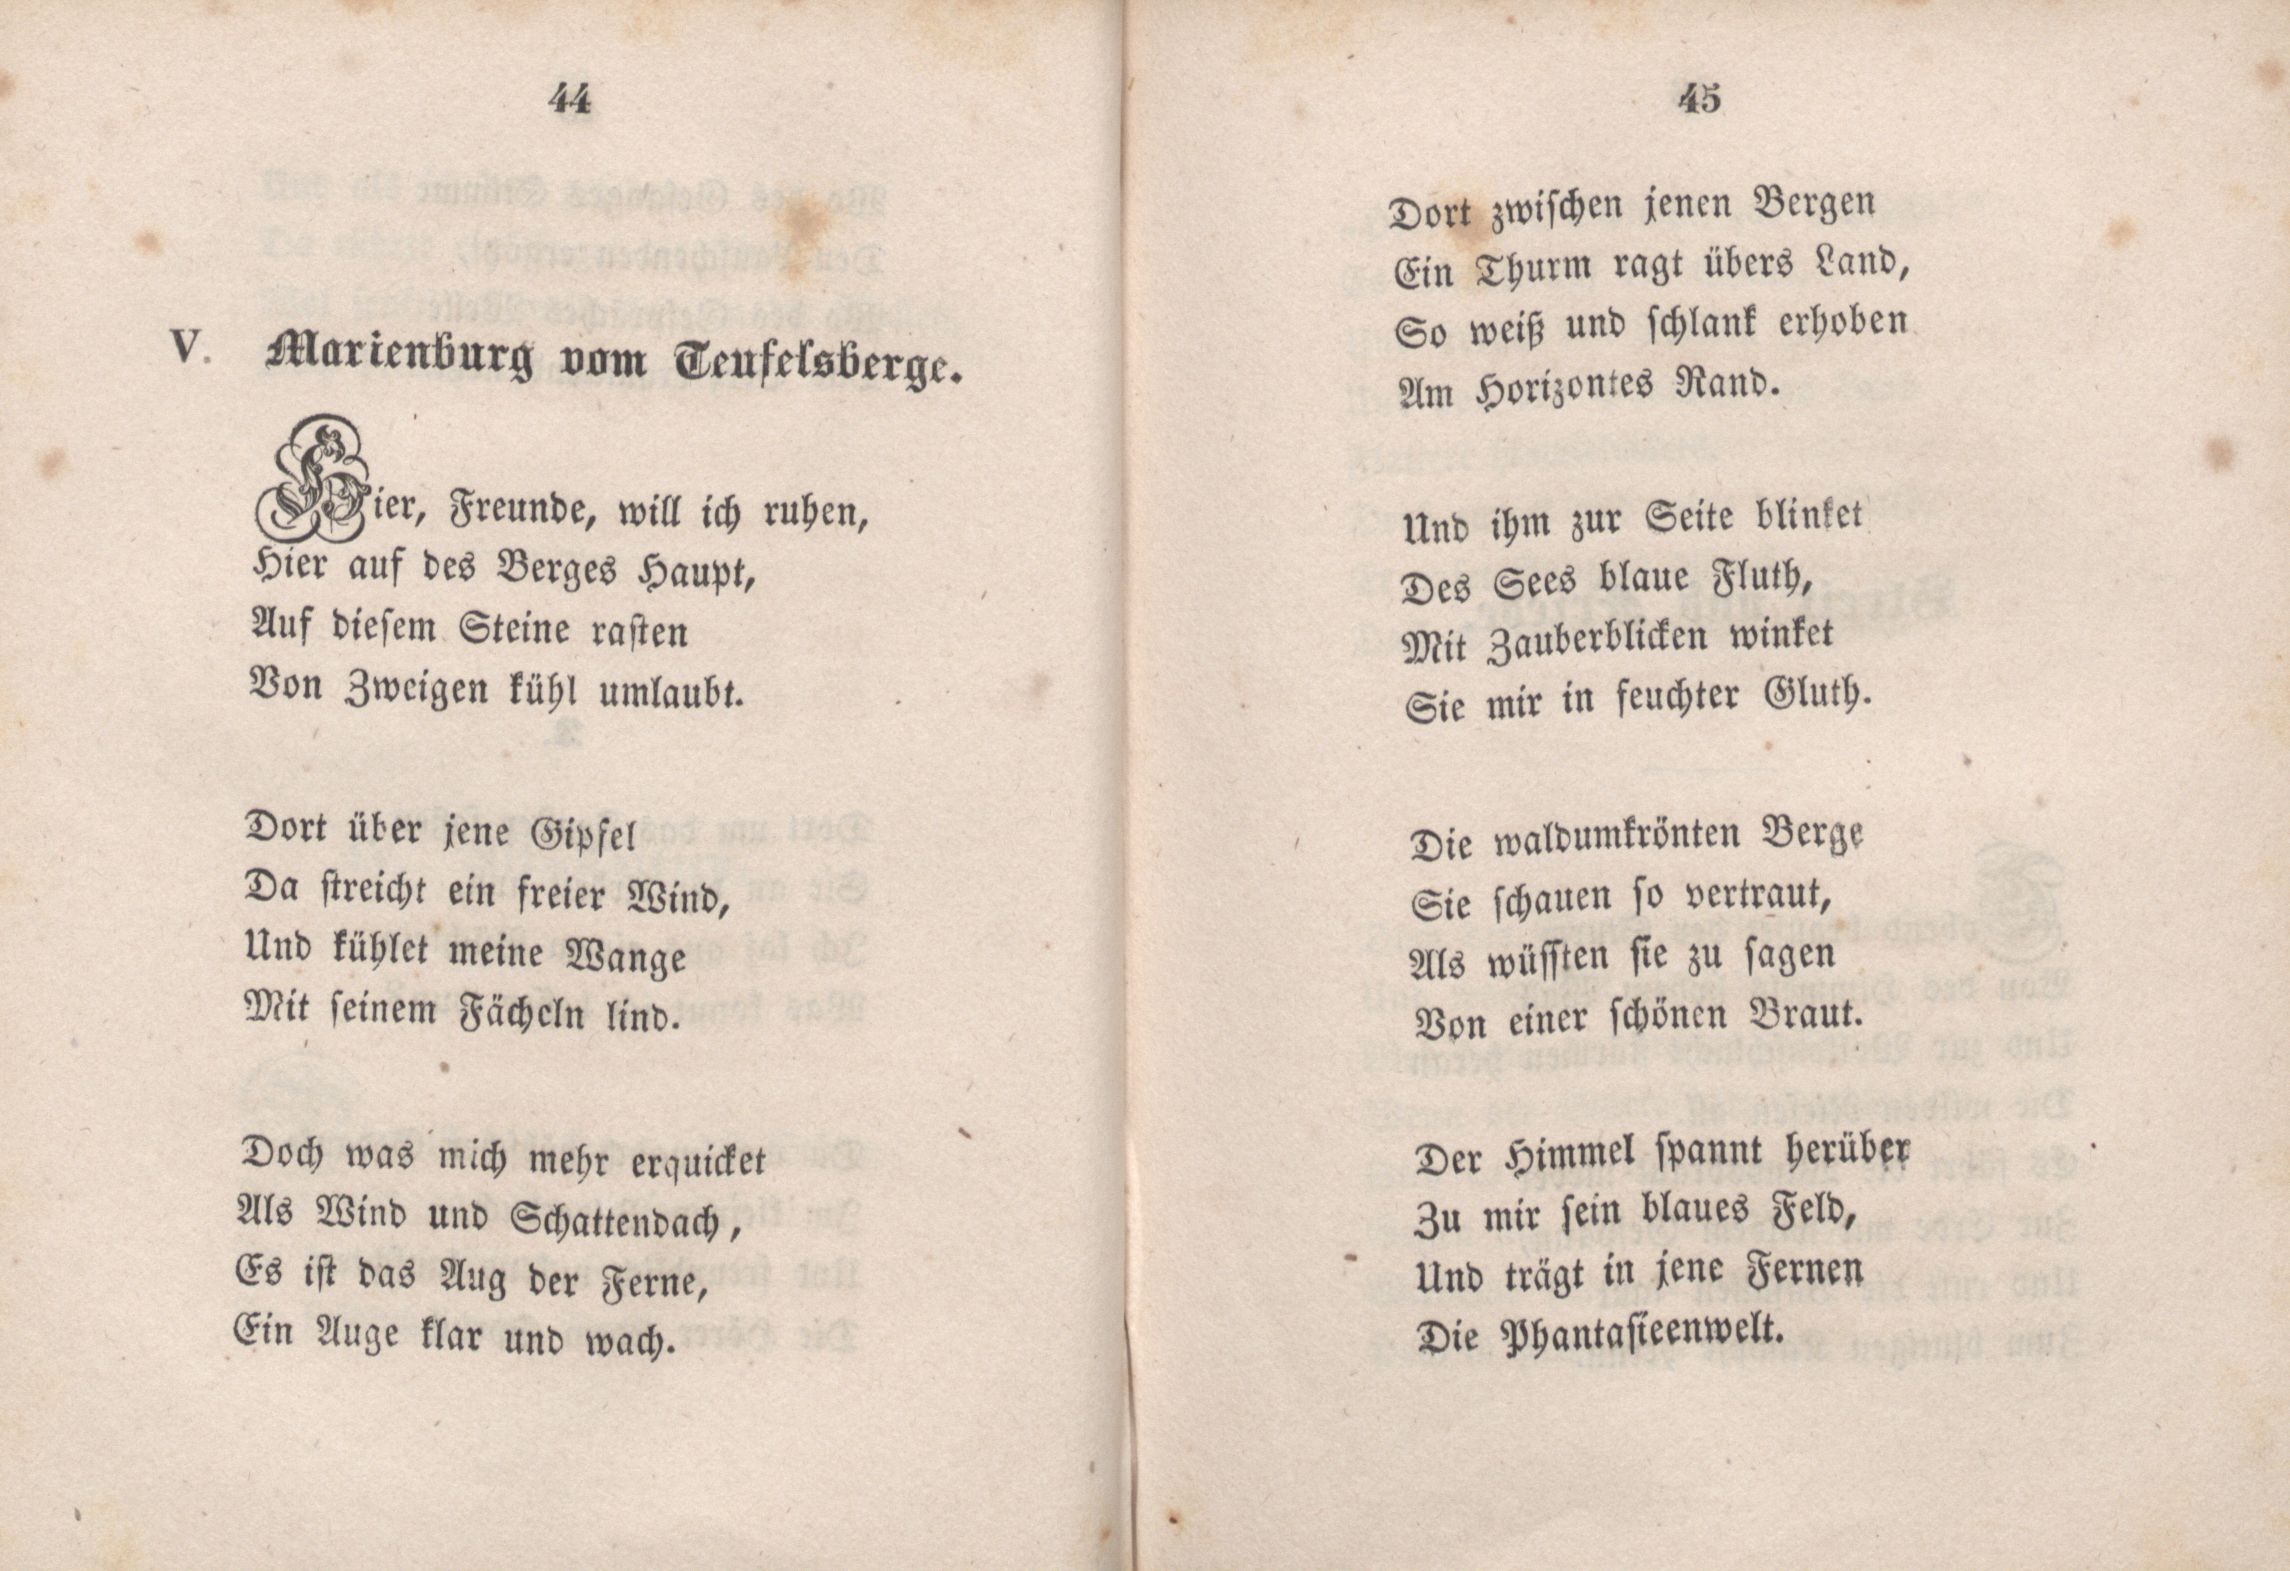 Marienburg vom Teufelsberge (1846) | 1. (44-45) Haupttext